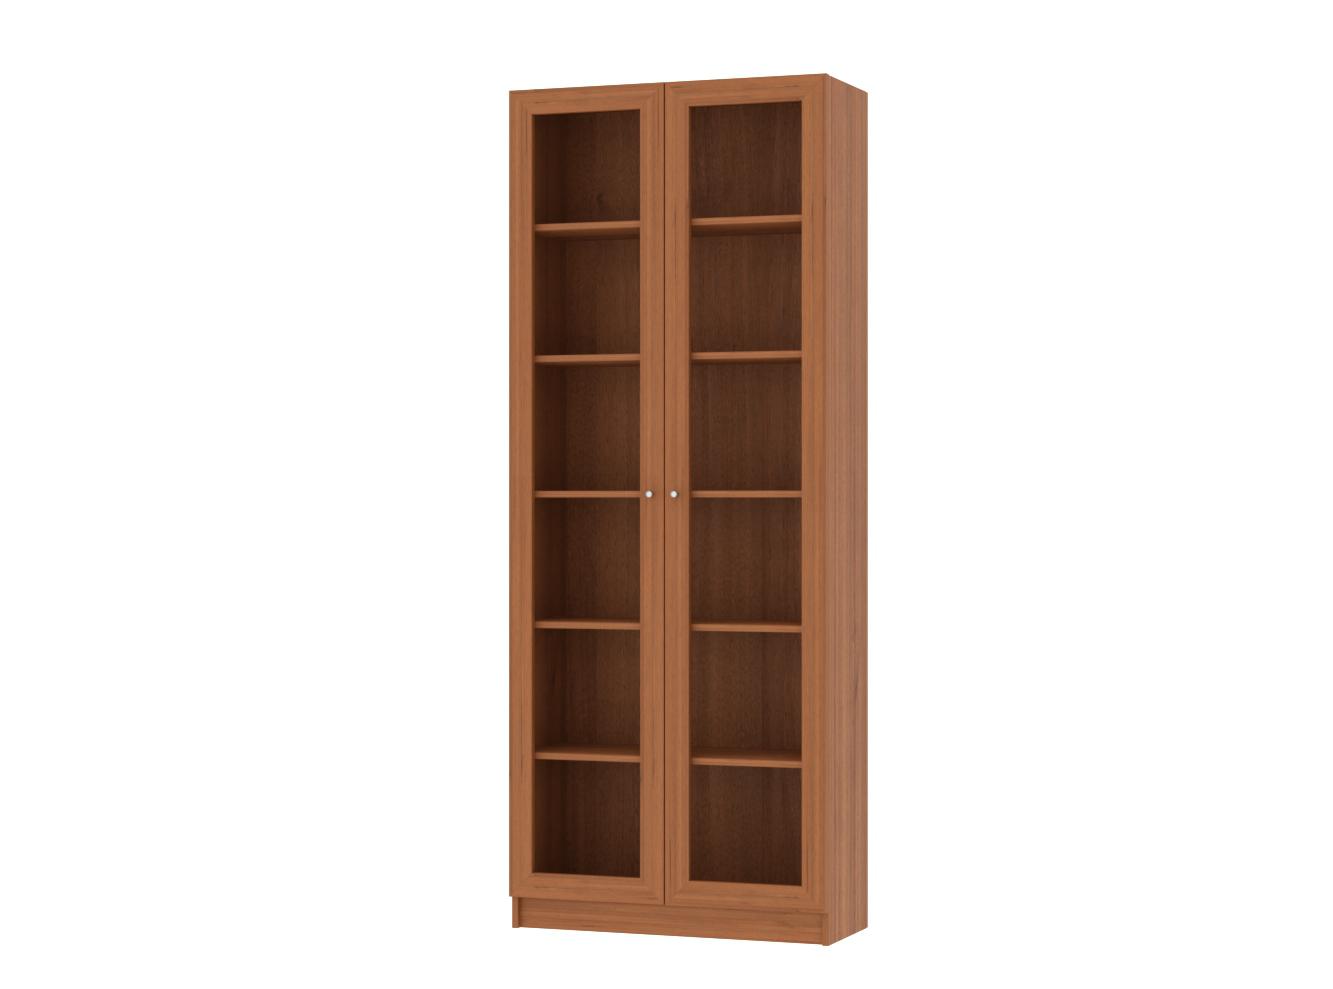 Книжный шкаф Билли 336 walnut guarneri ИКЕА (IKEA) изображение товара